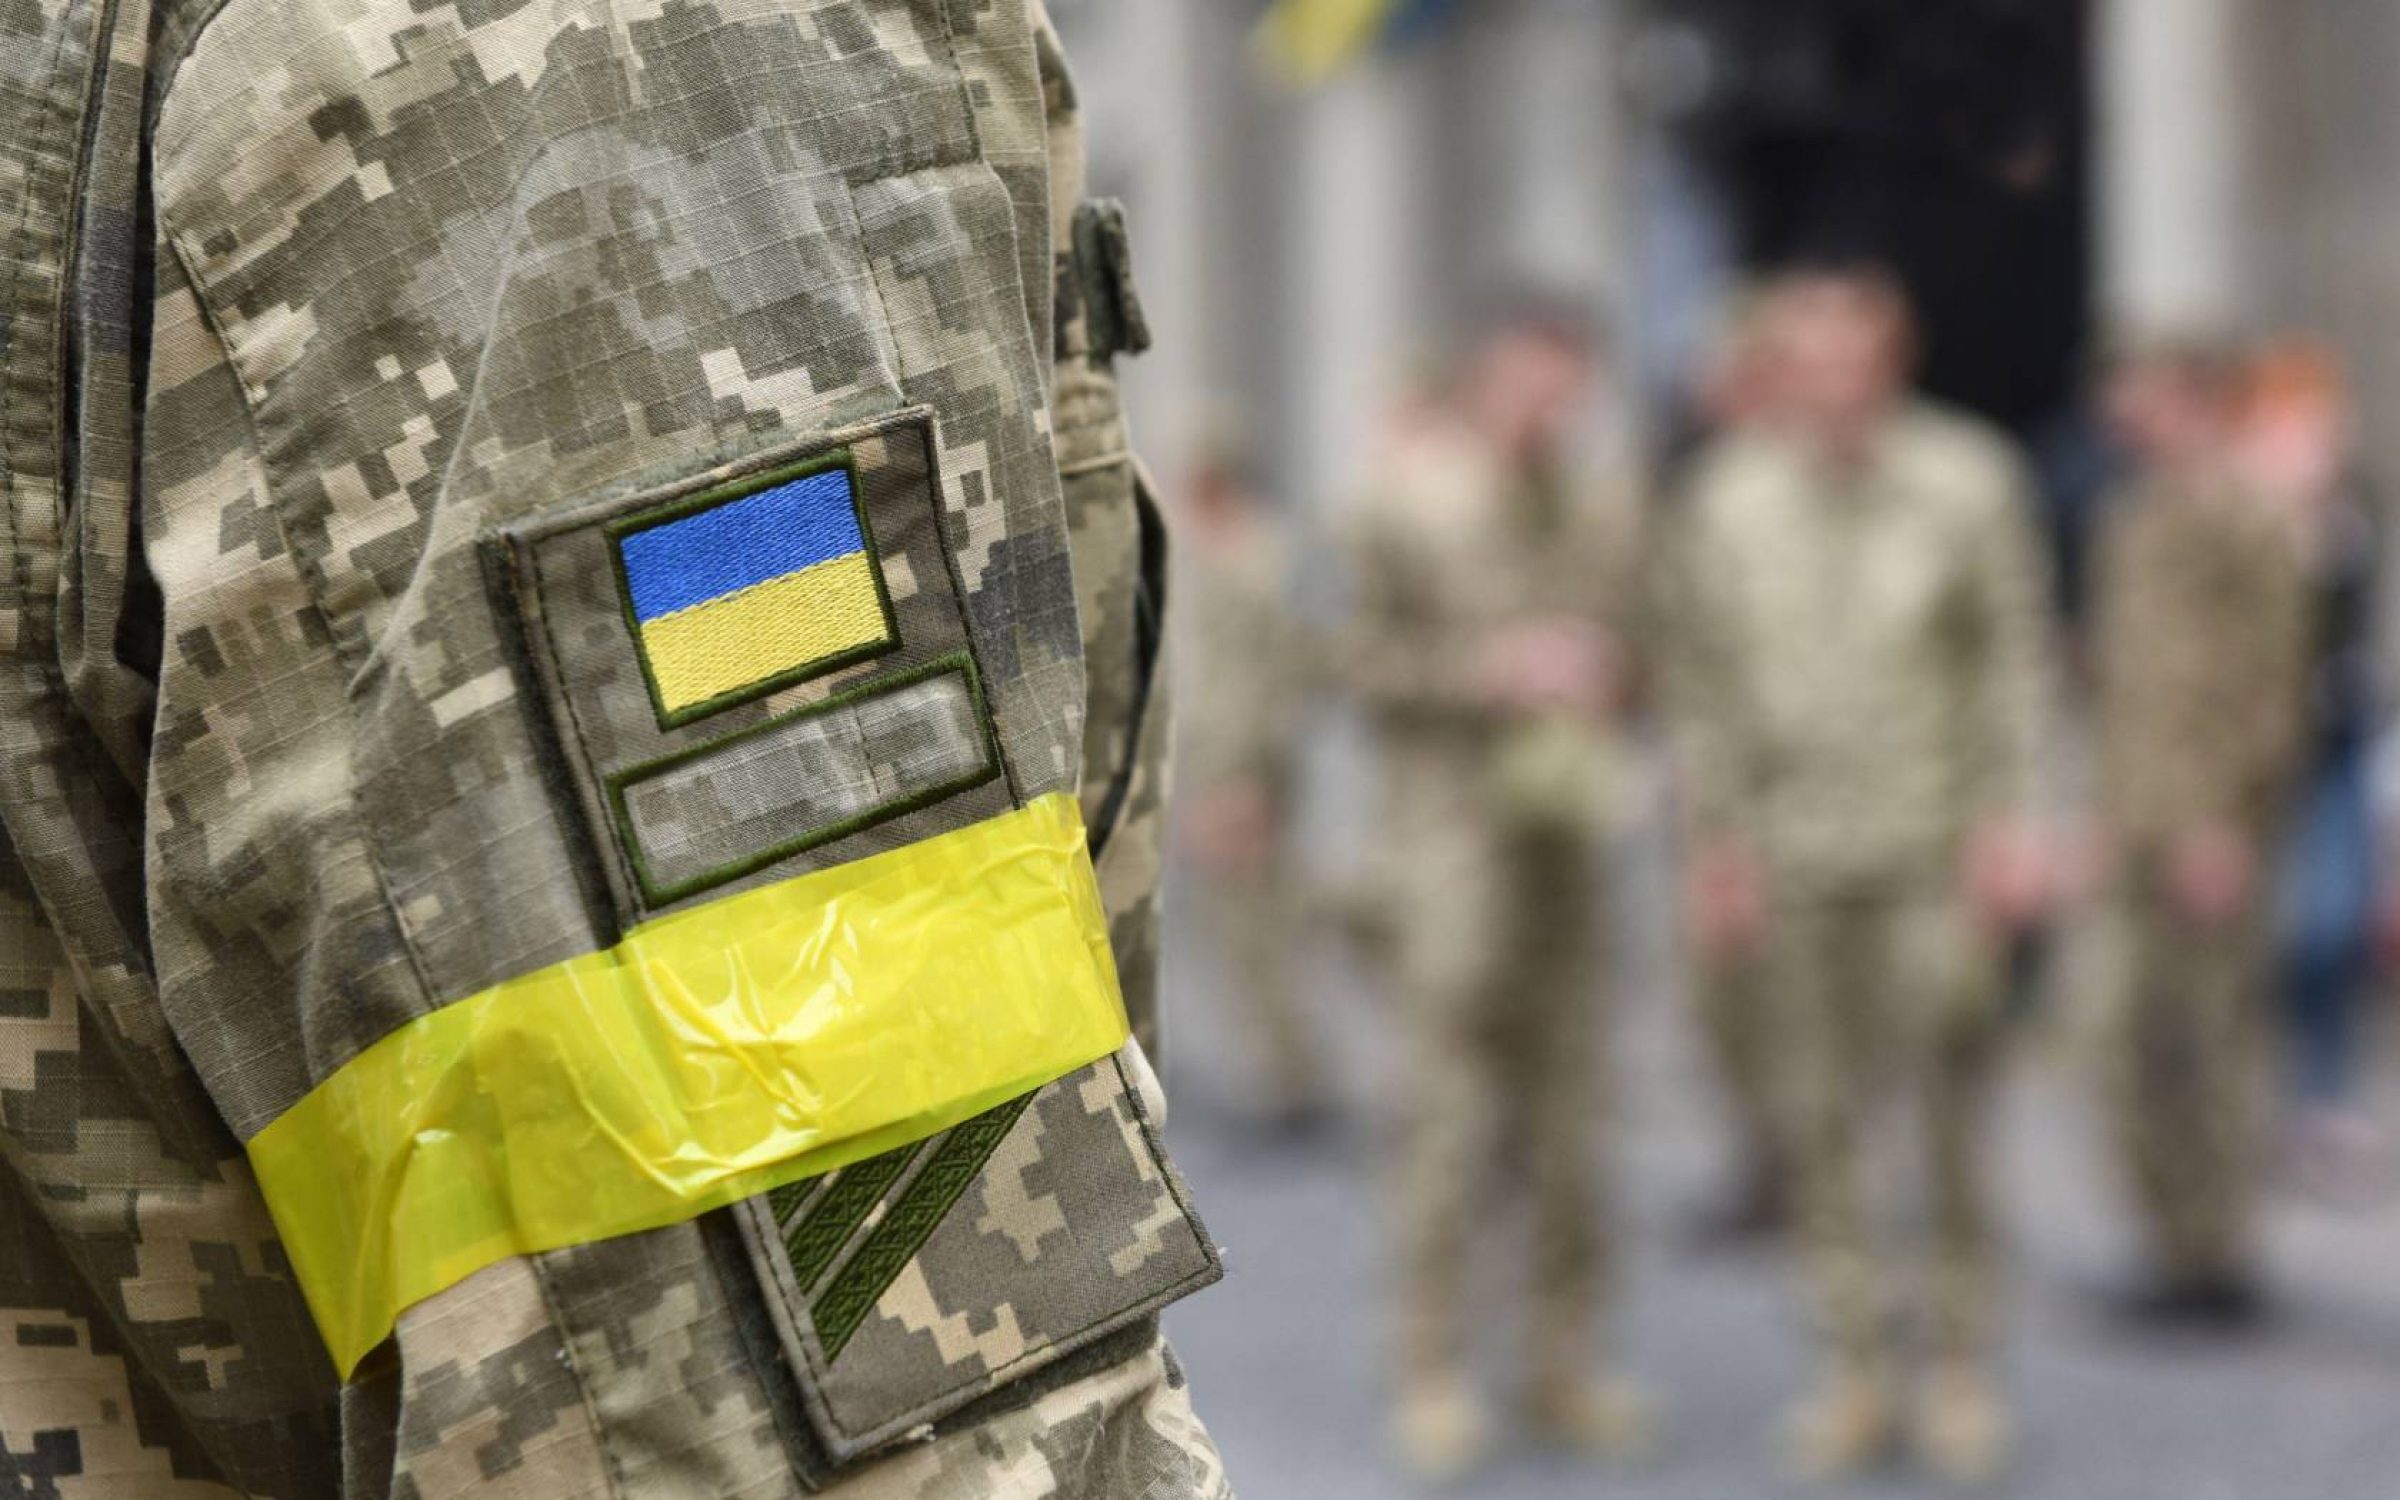 Ukraine Army Uniform - Combat Uniform & Amunition for Soldiers